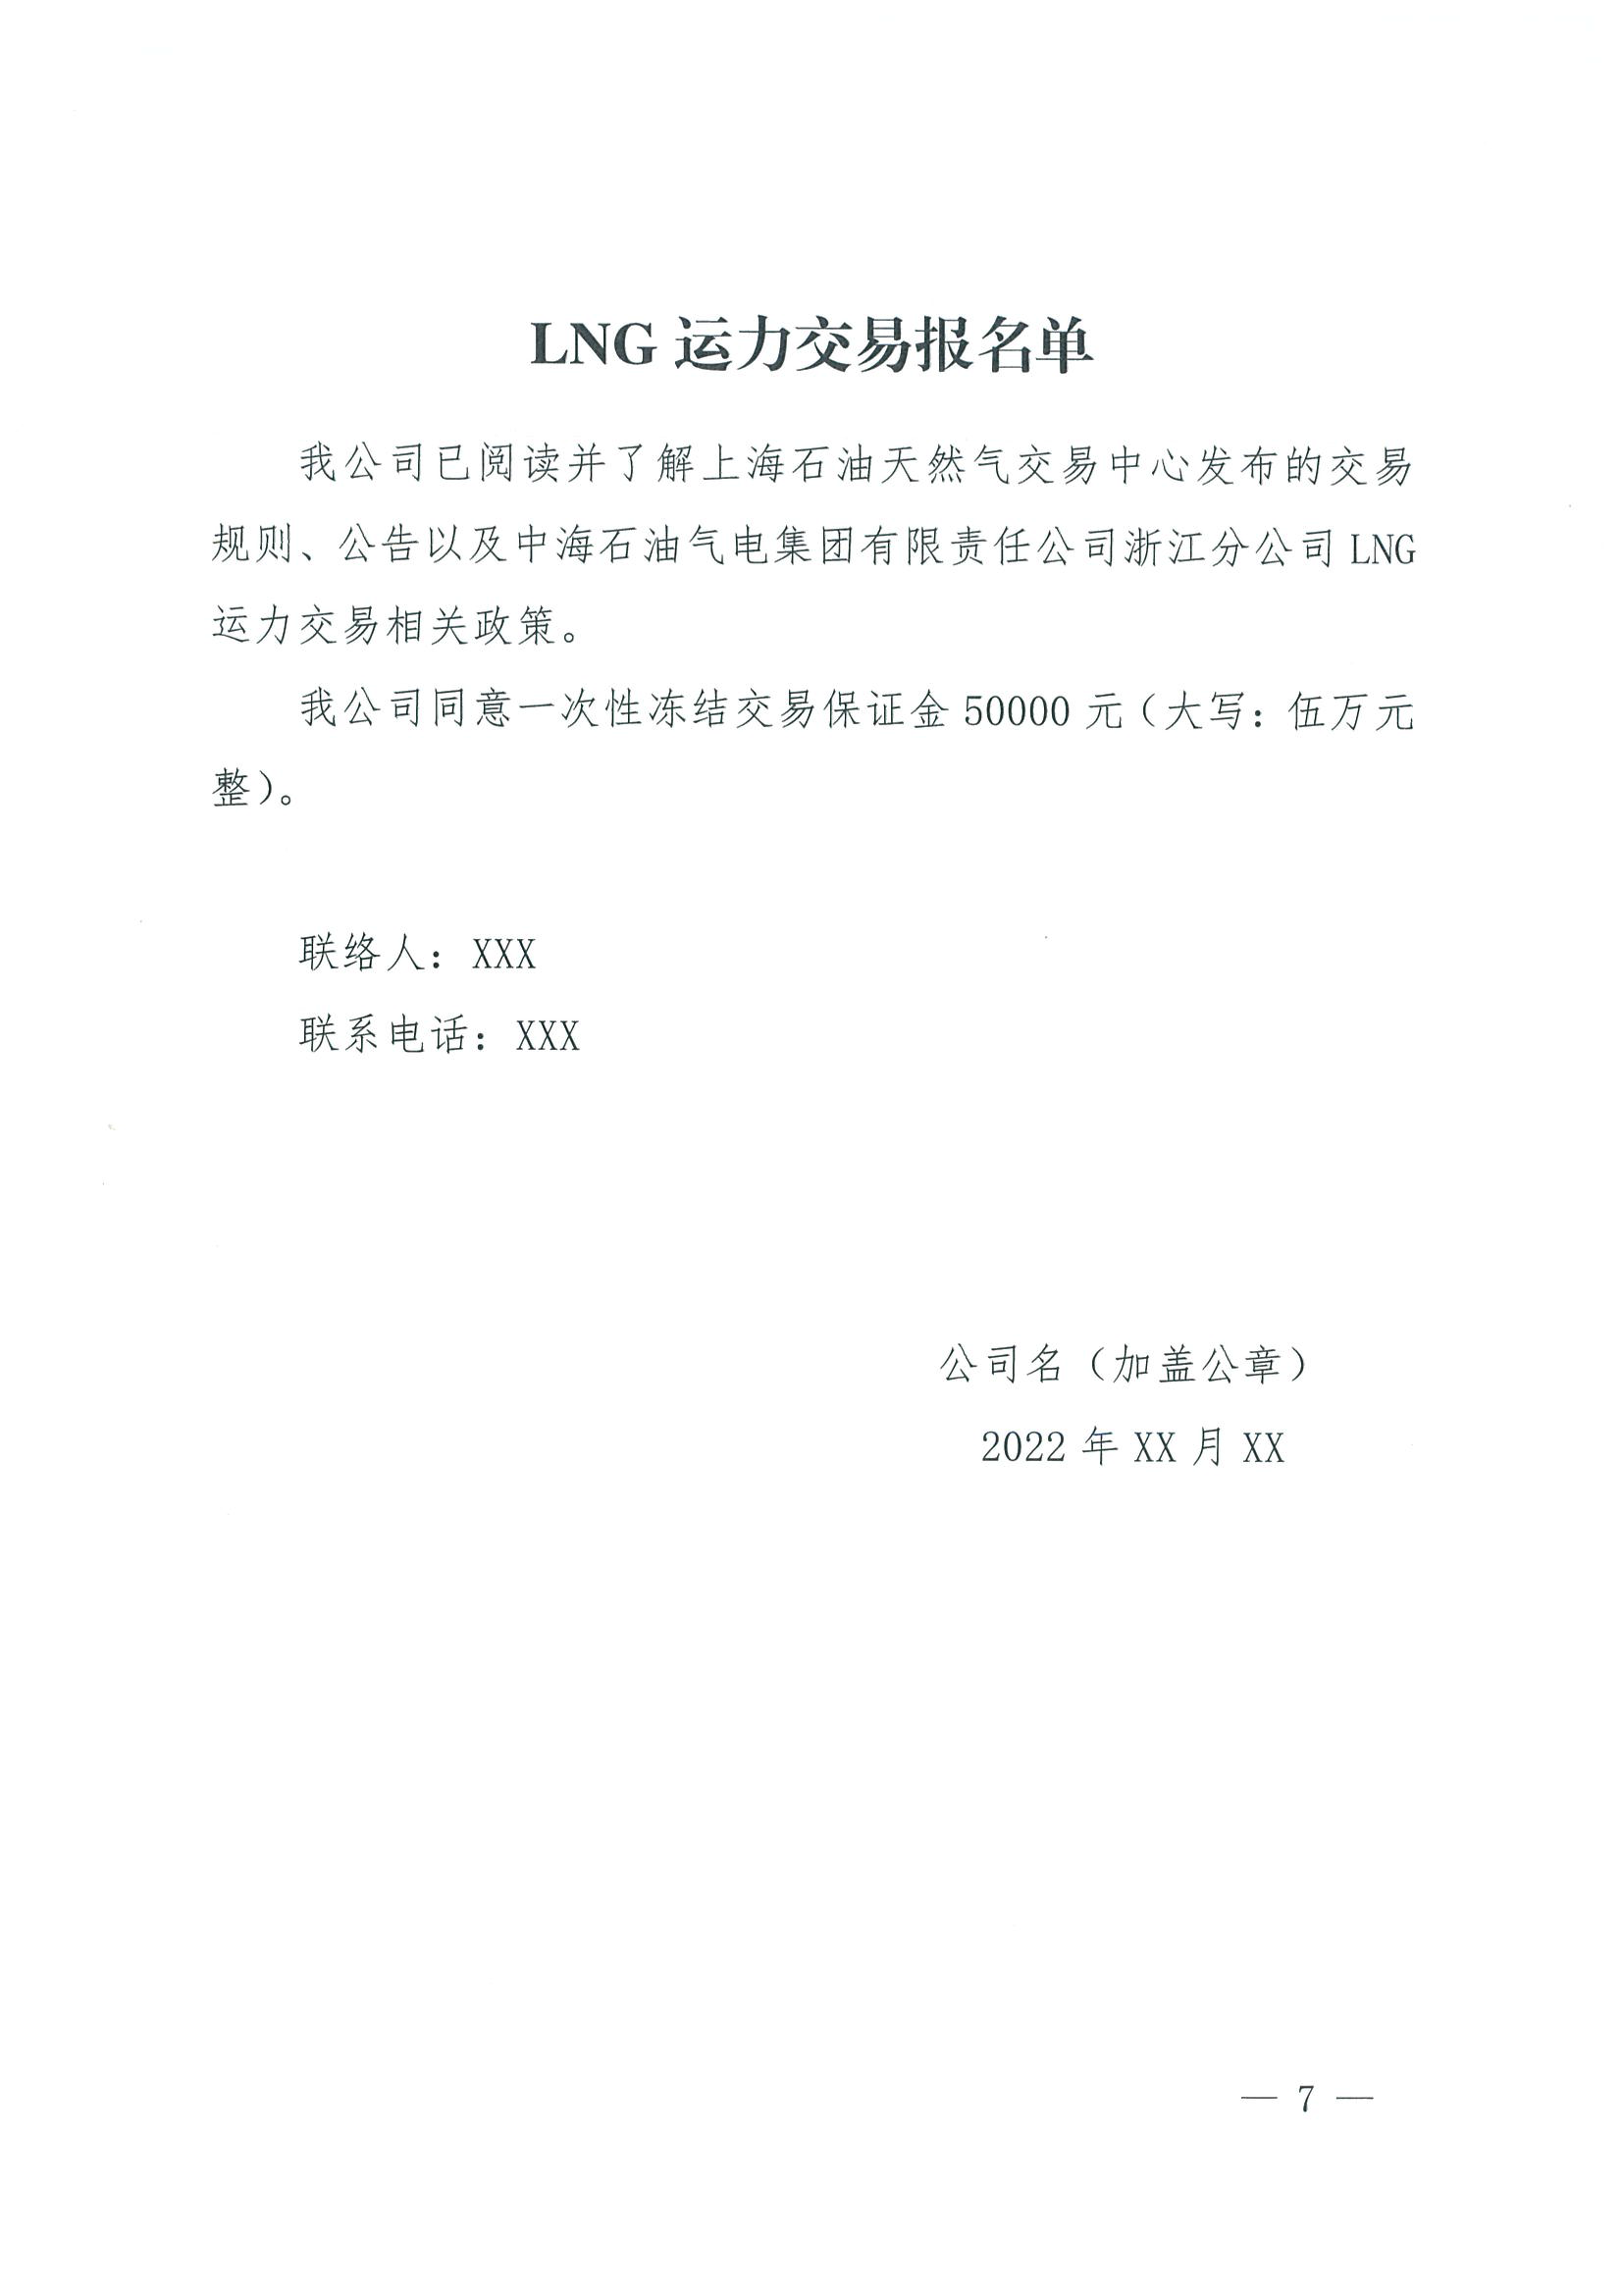 附件一：关于开展LNG运力竞价交易的公告0927_页面_7.png